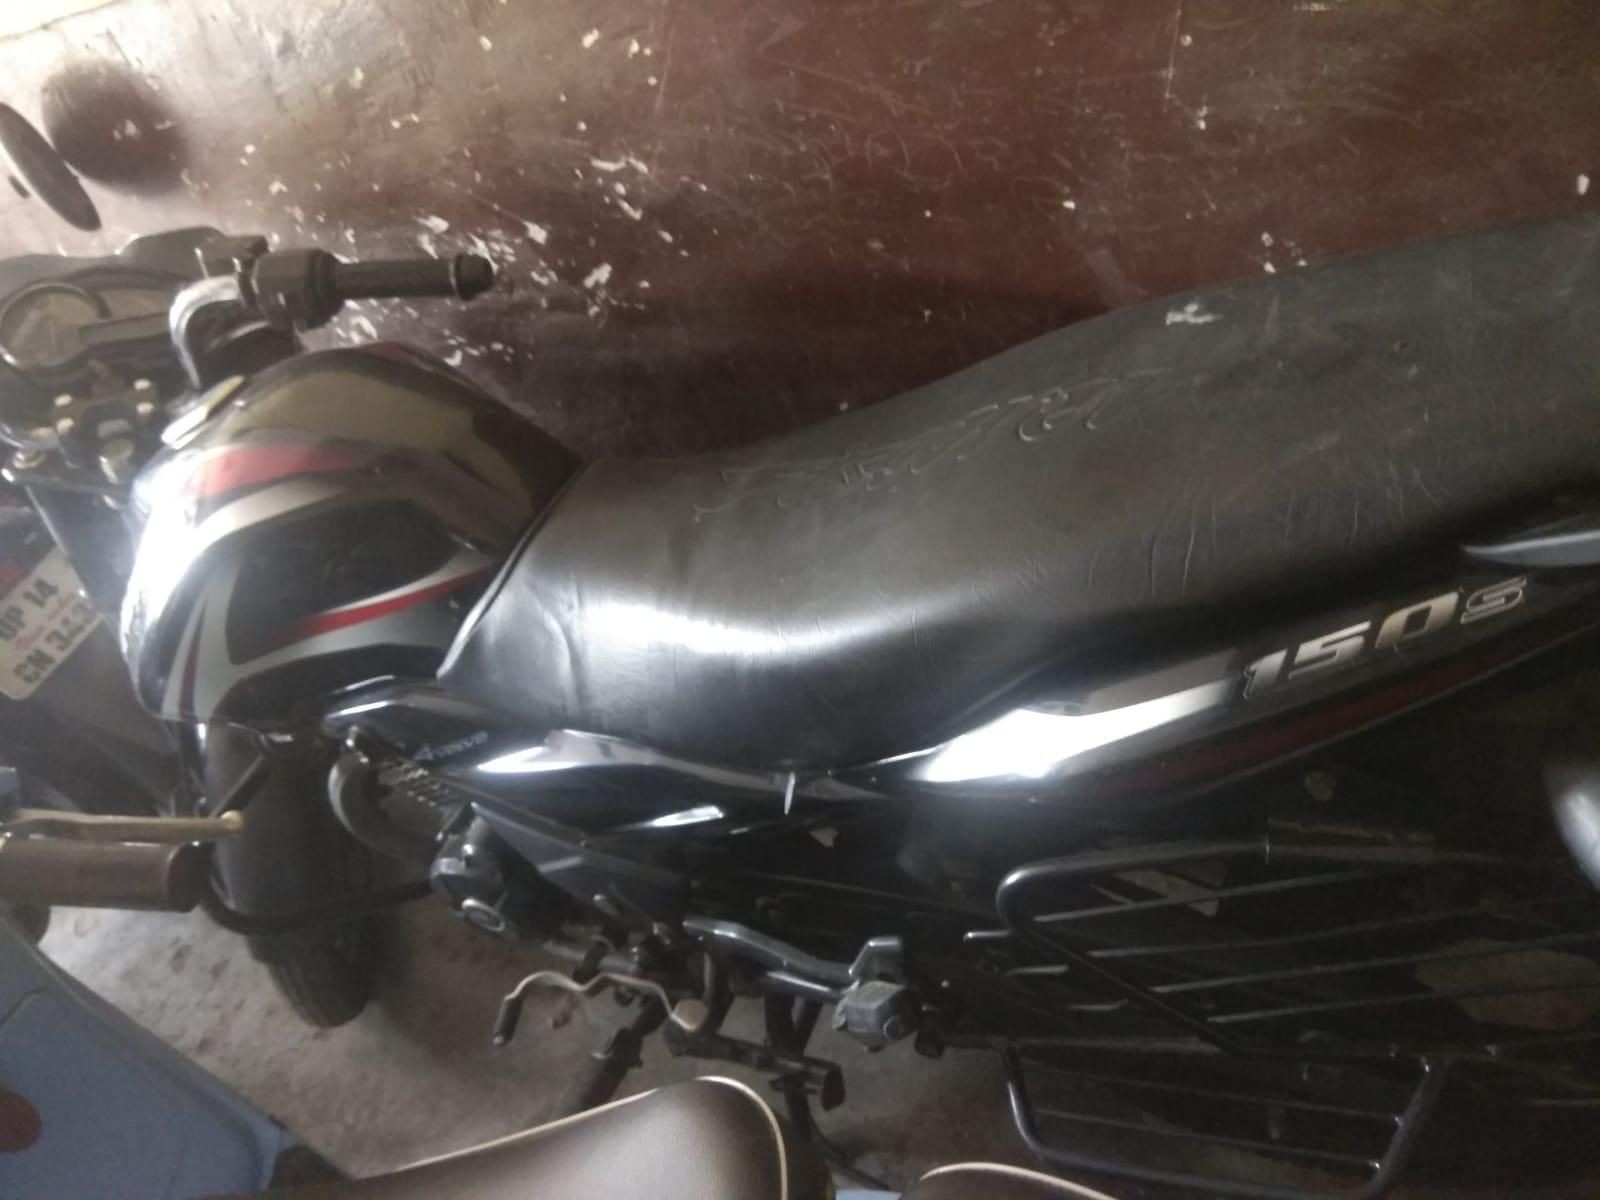 Used Bajaj Discover 150cc 2015